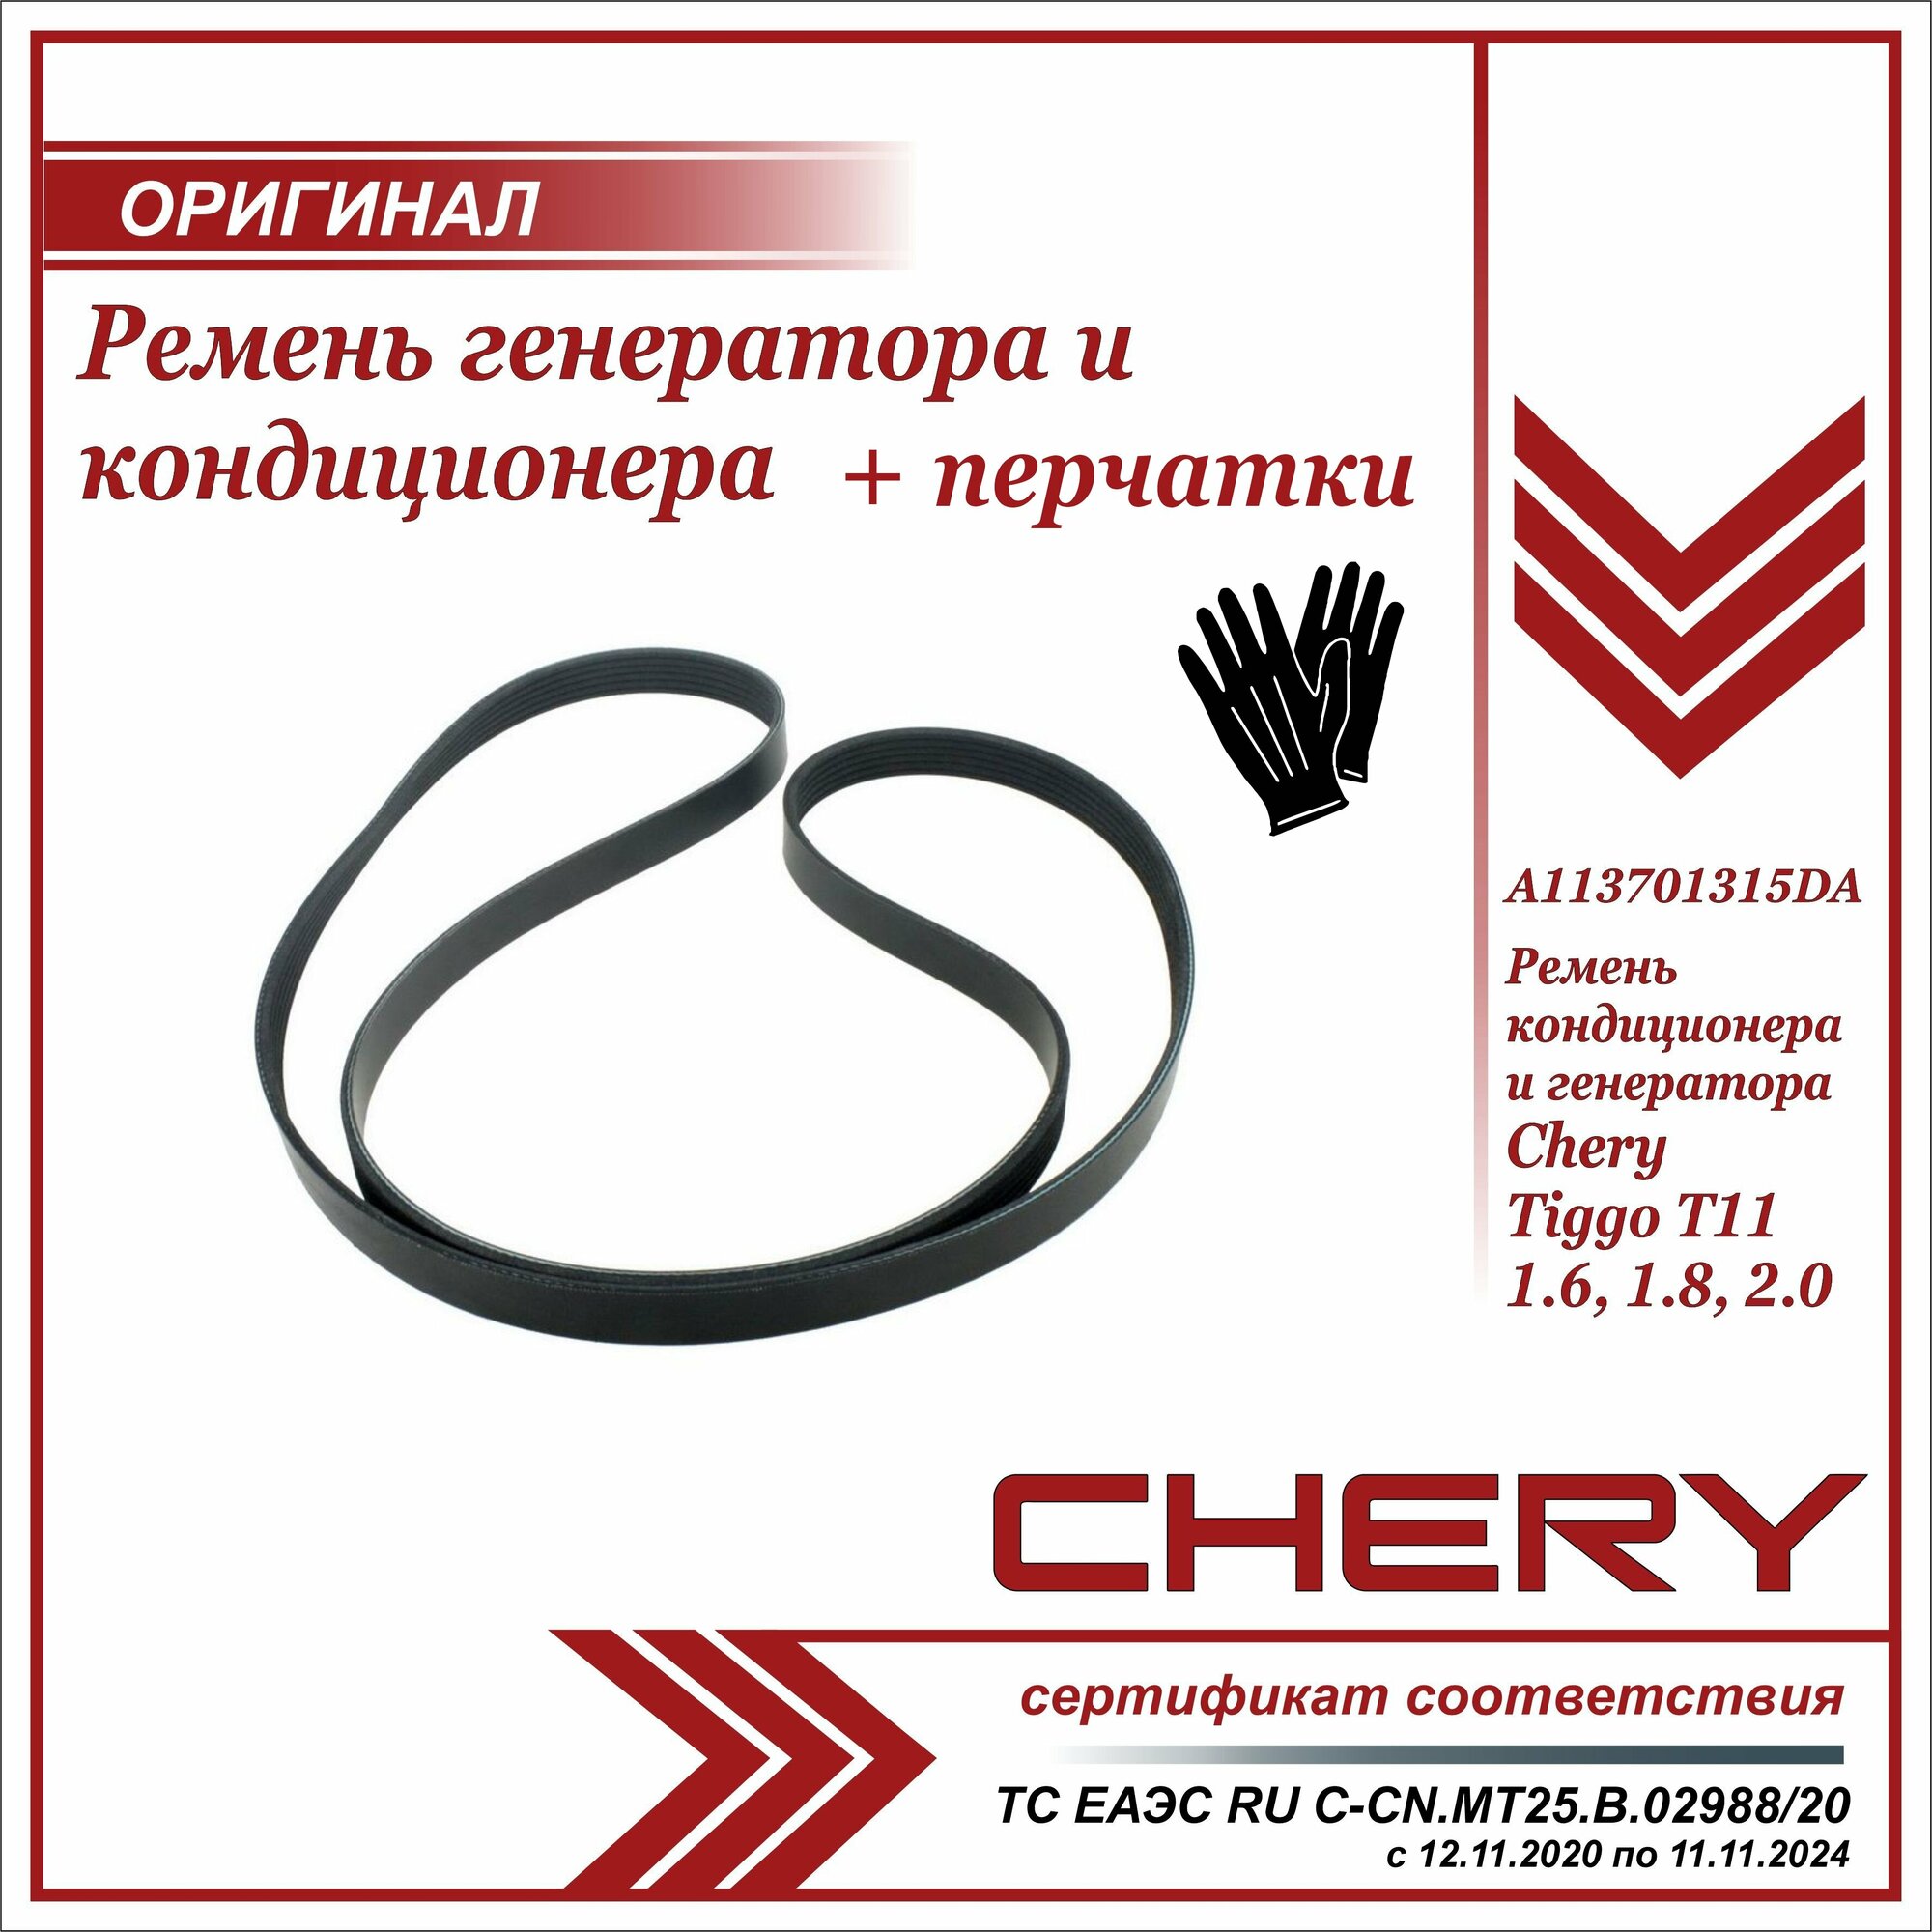 Ремень генератора и кондиционера Чери Тигго Т11 1.6 1.8 2.0  Chery Tiggo T11 1.6 1.8 2.0 Т11 + пара перчаток в комплекте